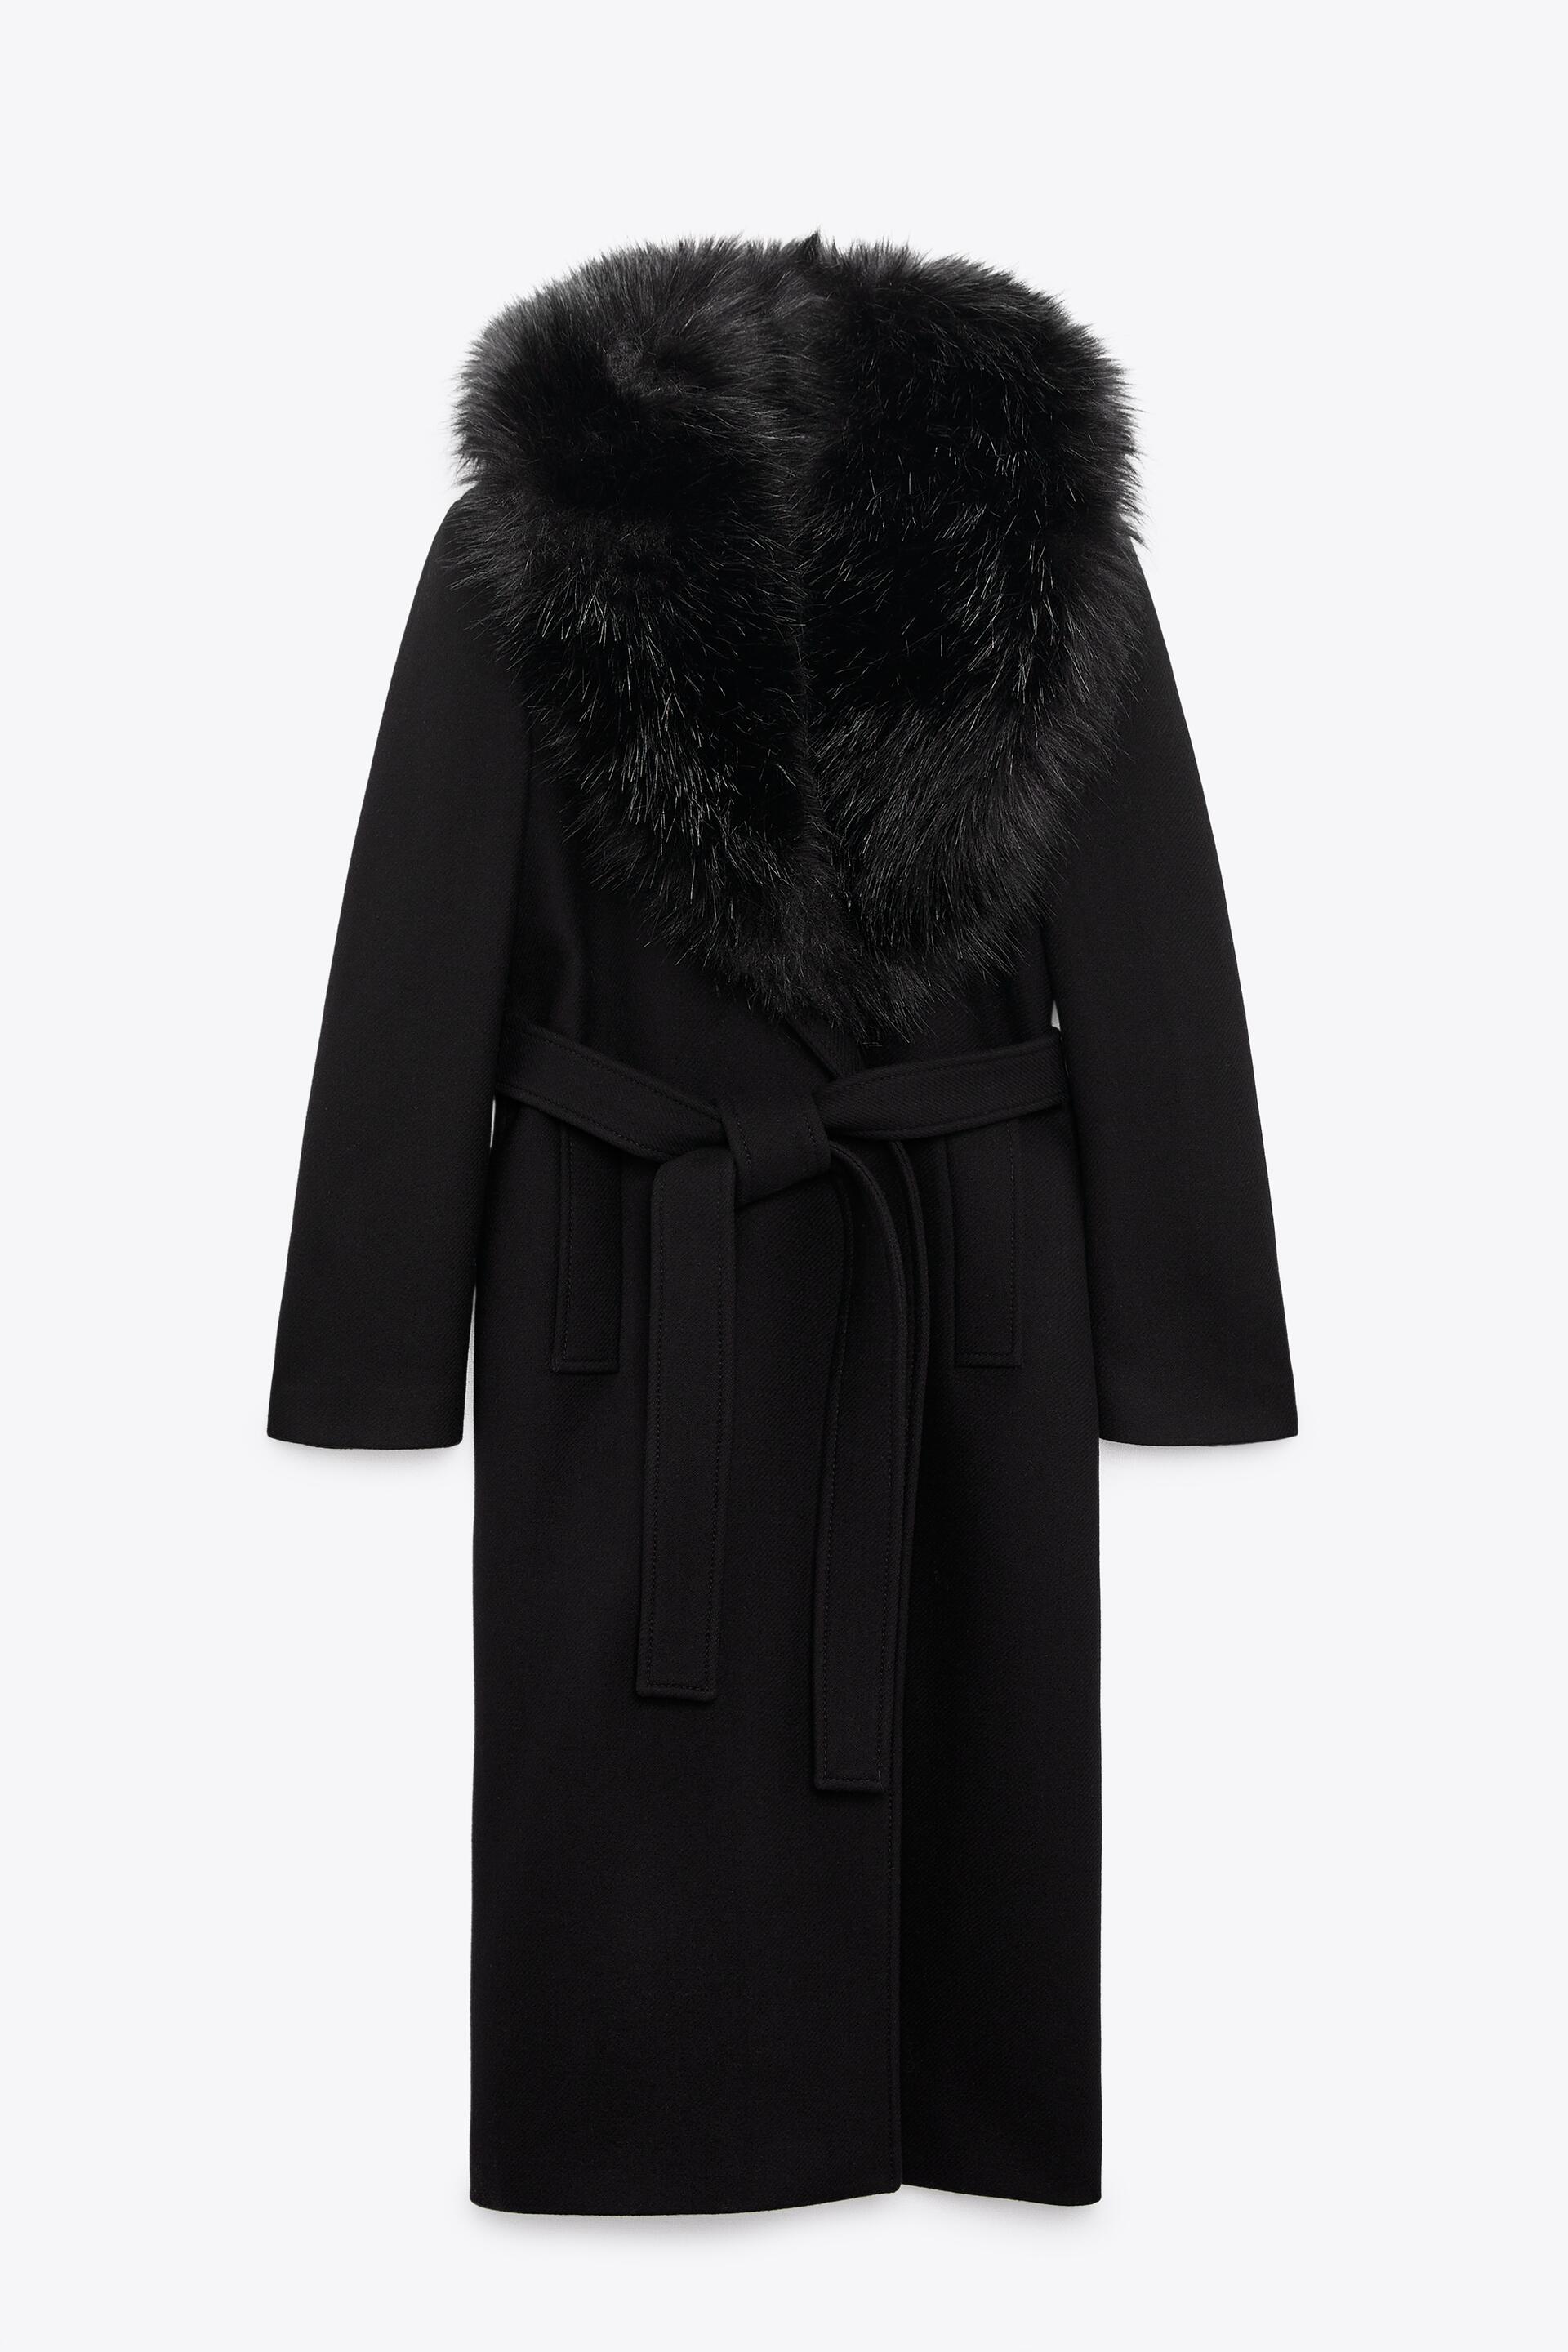 Пальто женское ZARA 08551744 черное XL (доставка из-за рубежа)